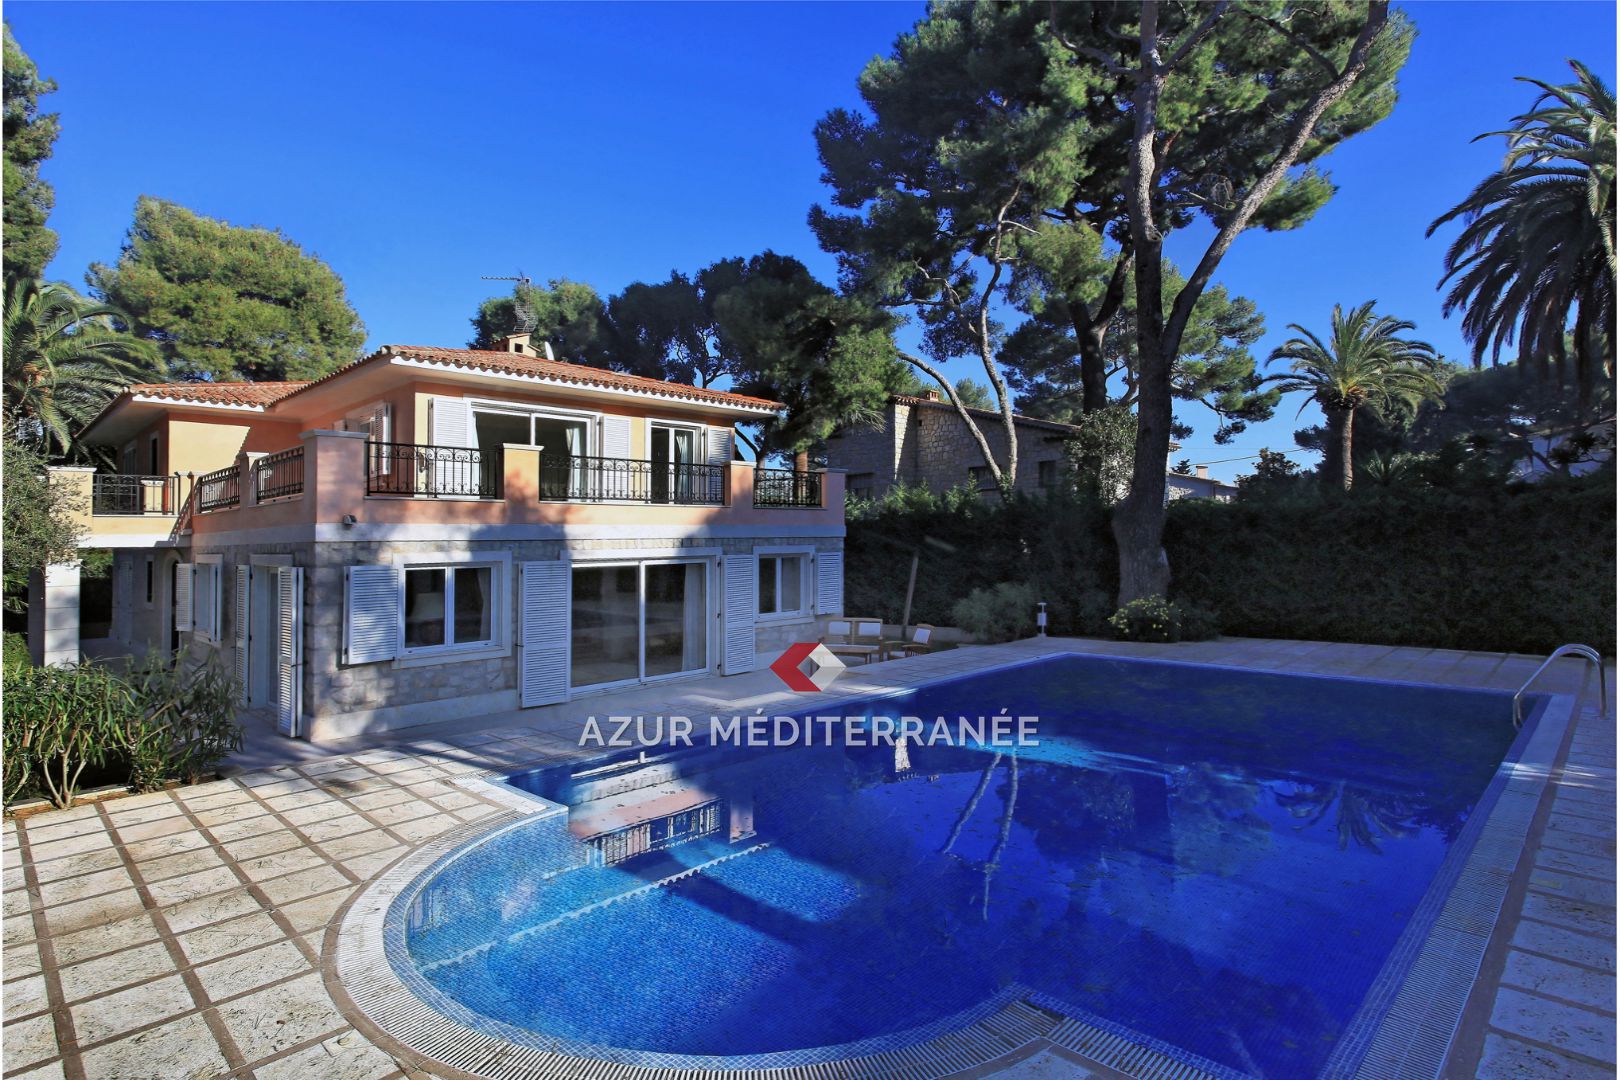 Vente Maison 260m² à Saint-Jean-Cap-Ferrat (06230) - Azur Mediterranee